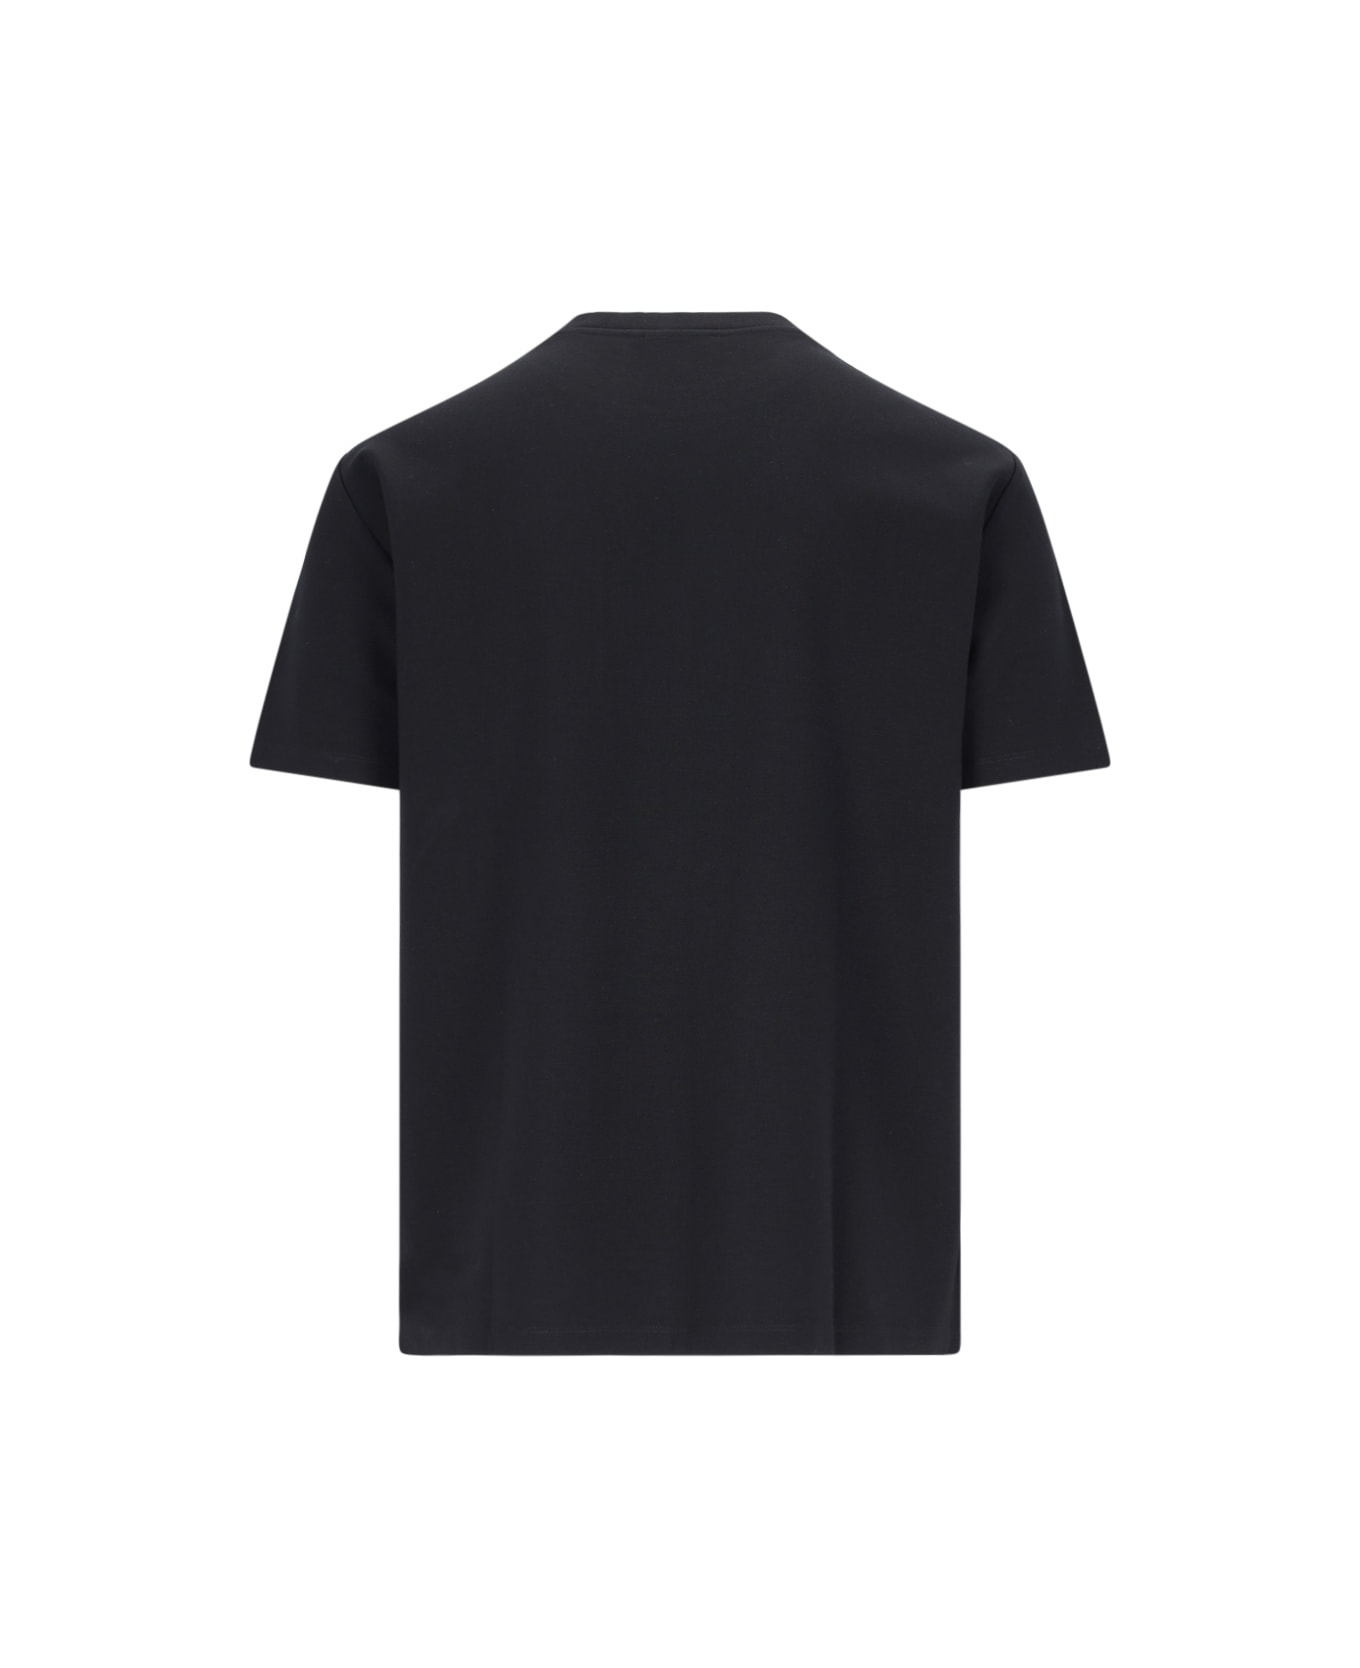 Balmain Logo T-shirt - Black   シャツ